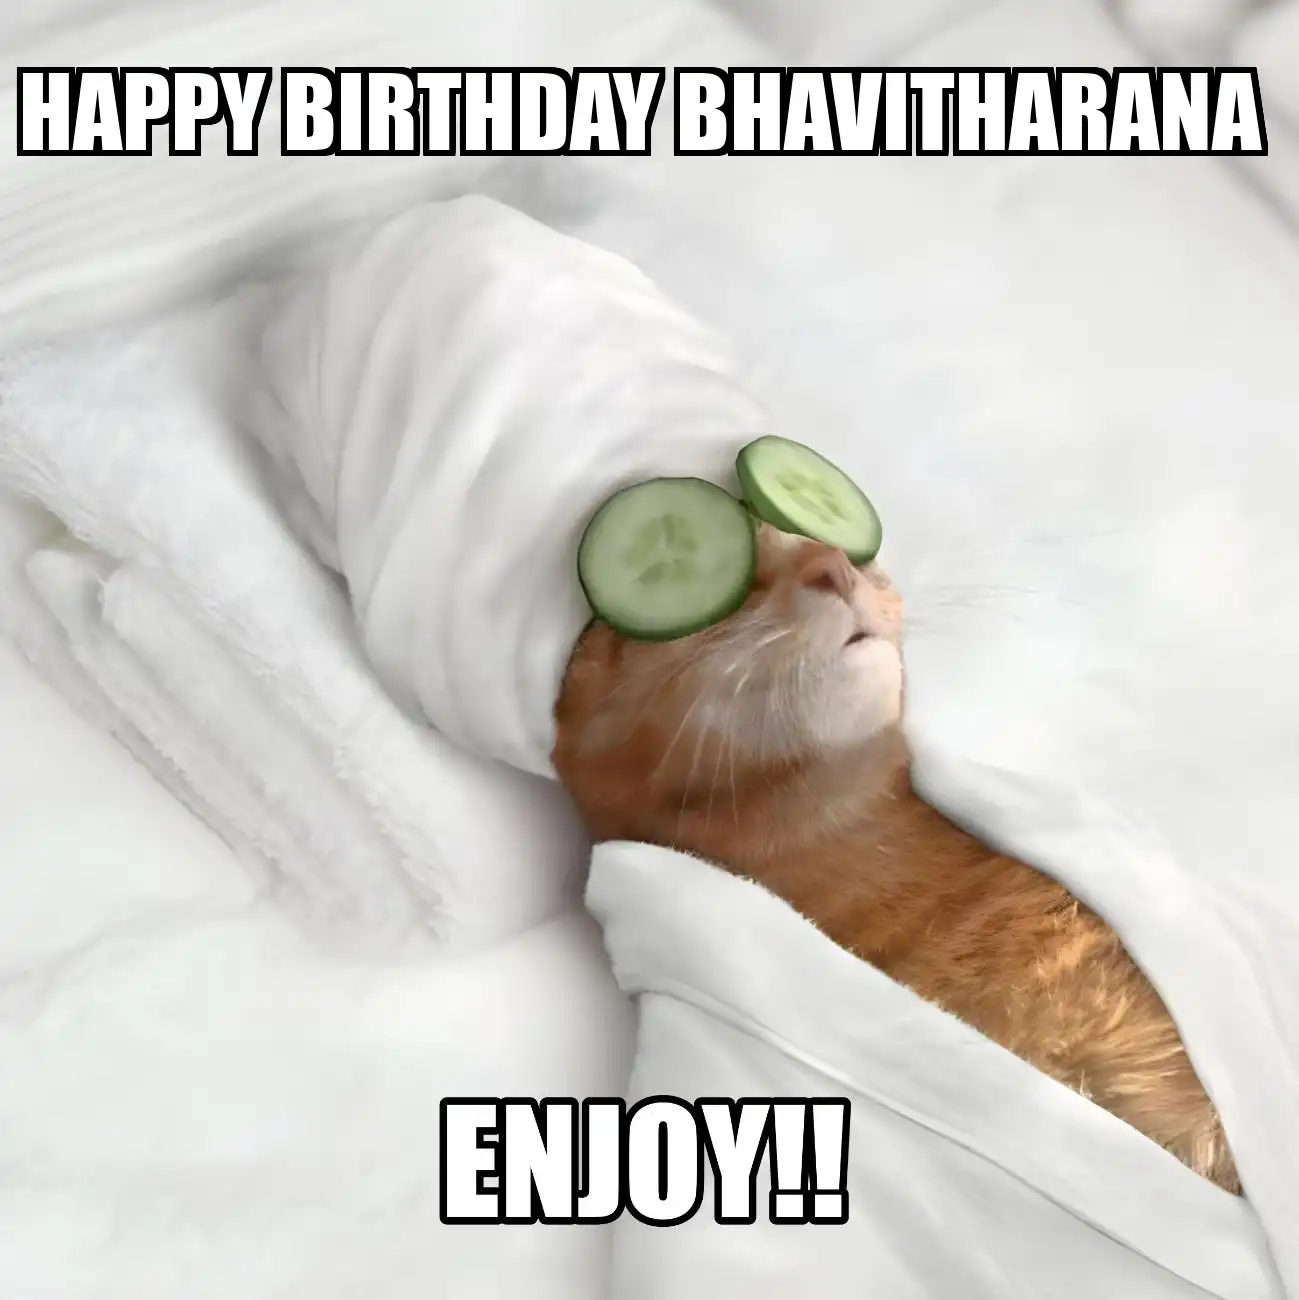 Happy Birthday Bhavitharana Enjoy Cat Meme